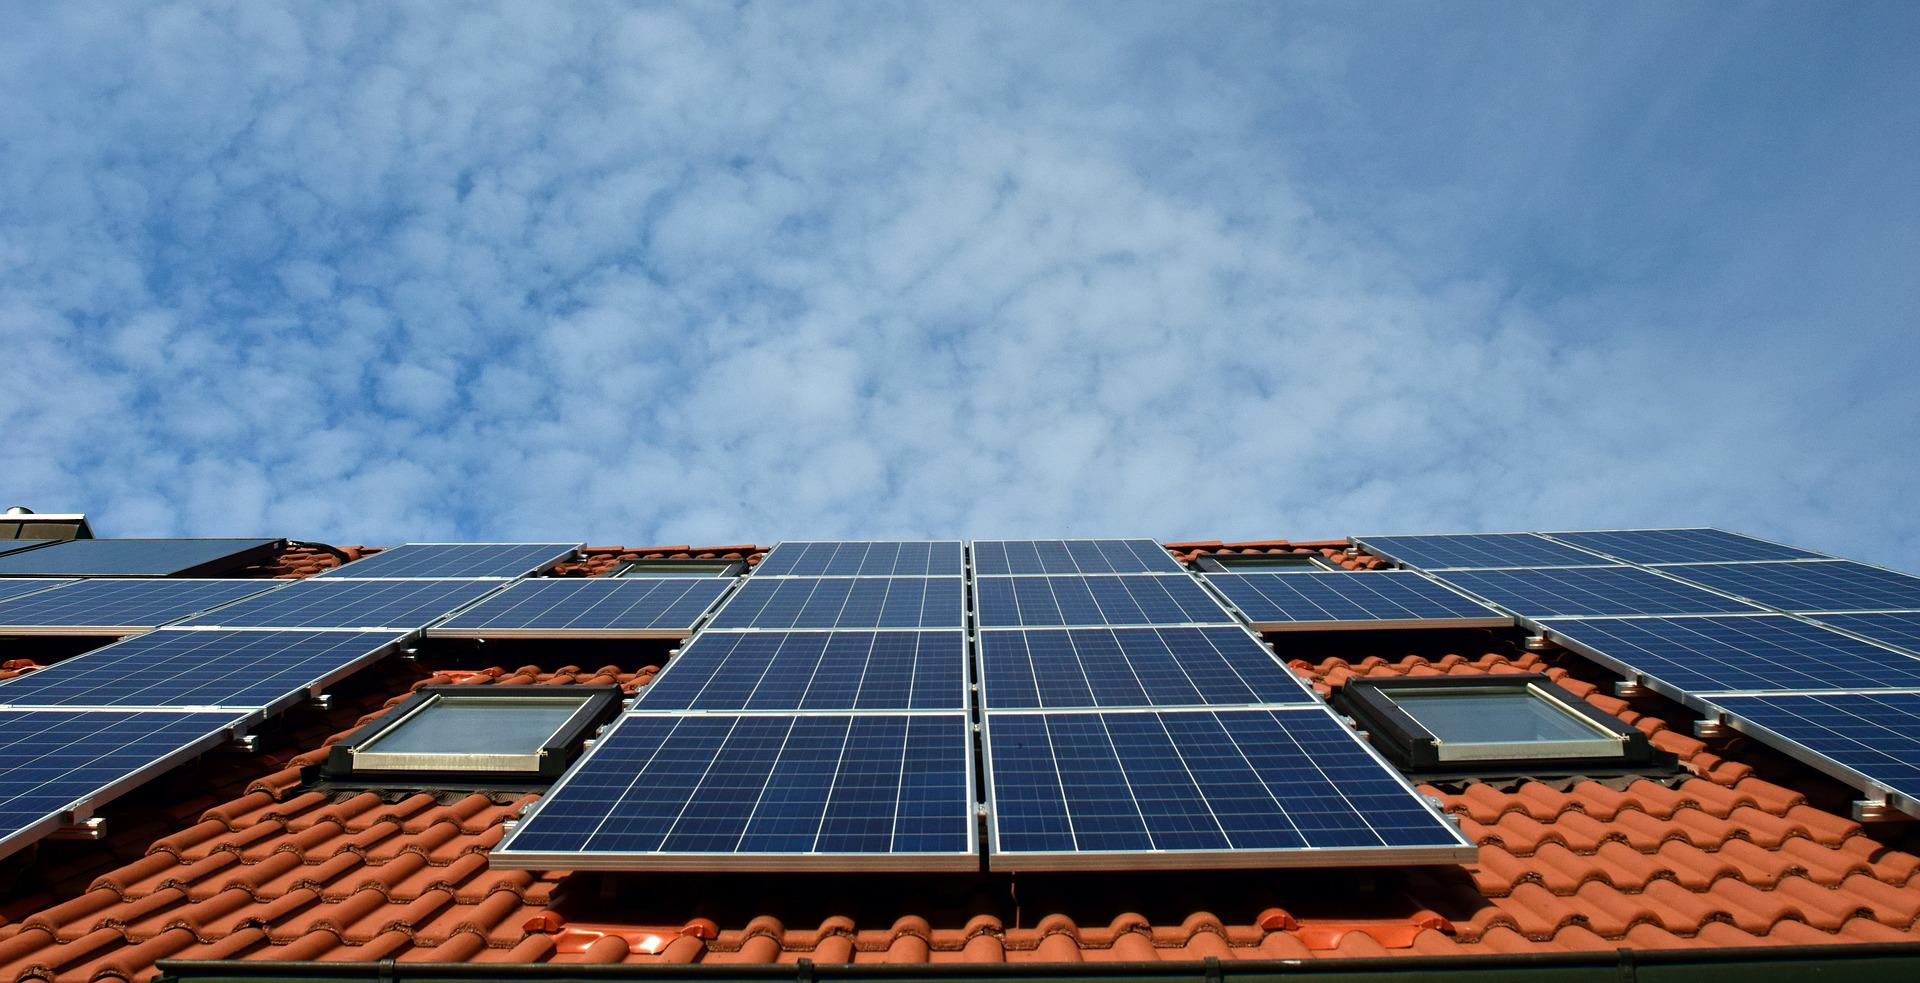 Quer trabalhar com energia solar? Prefeitura de Mossoró (RN) anuncia curso gratuito com 120 vagas para instalador de sistemas fotovoltaicos